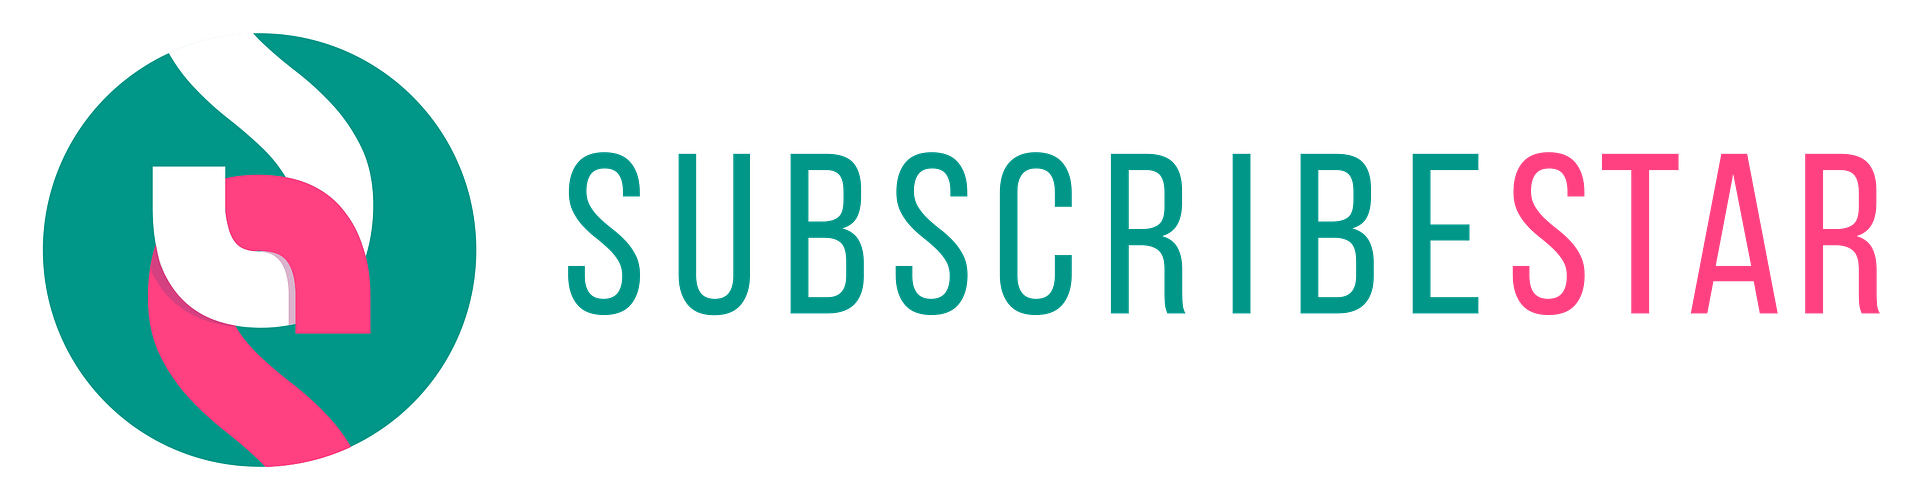 subscriberstar logo